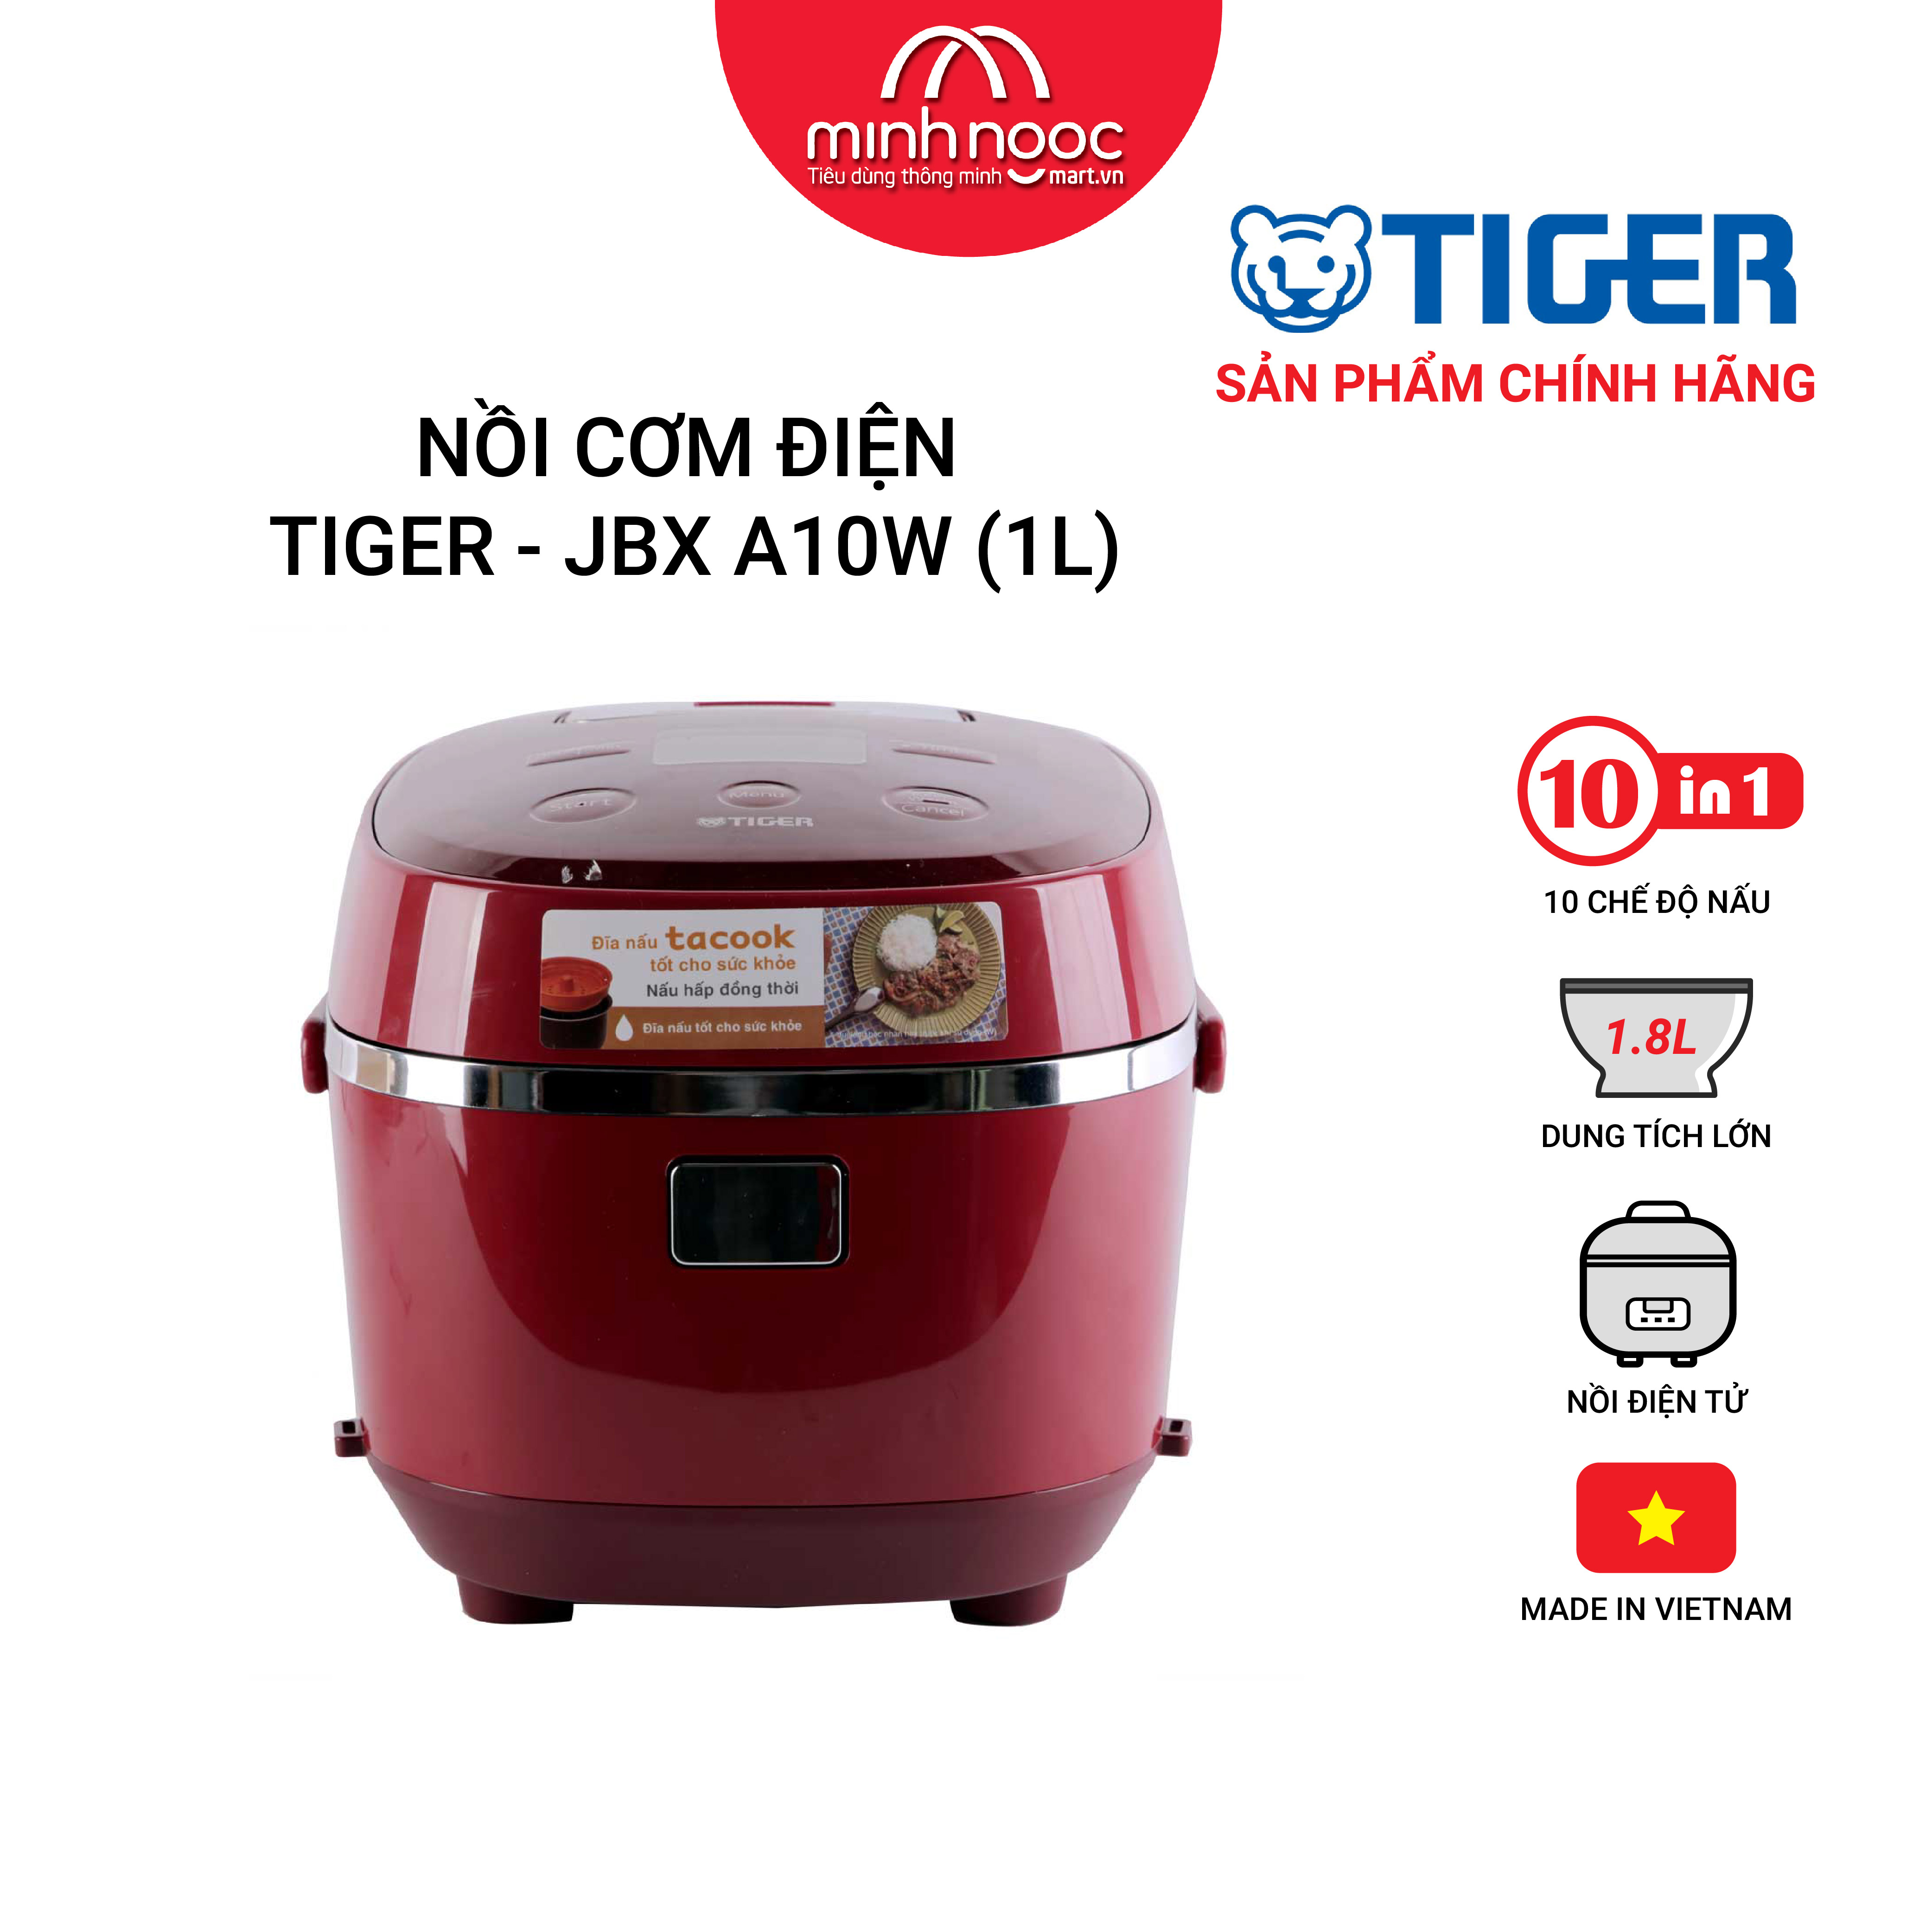 HÀNG CHÍNH HÃNG: Nồi cơm điện Tiger dung tích 1.0l JBX-A10W màu đỏ